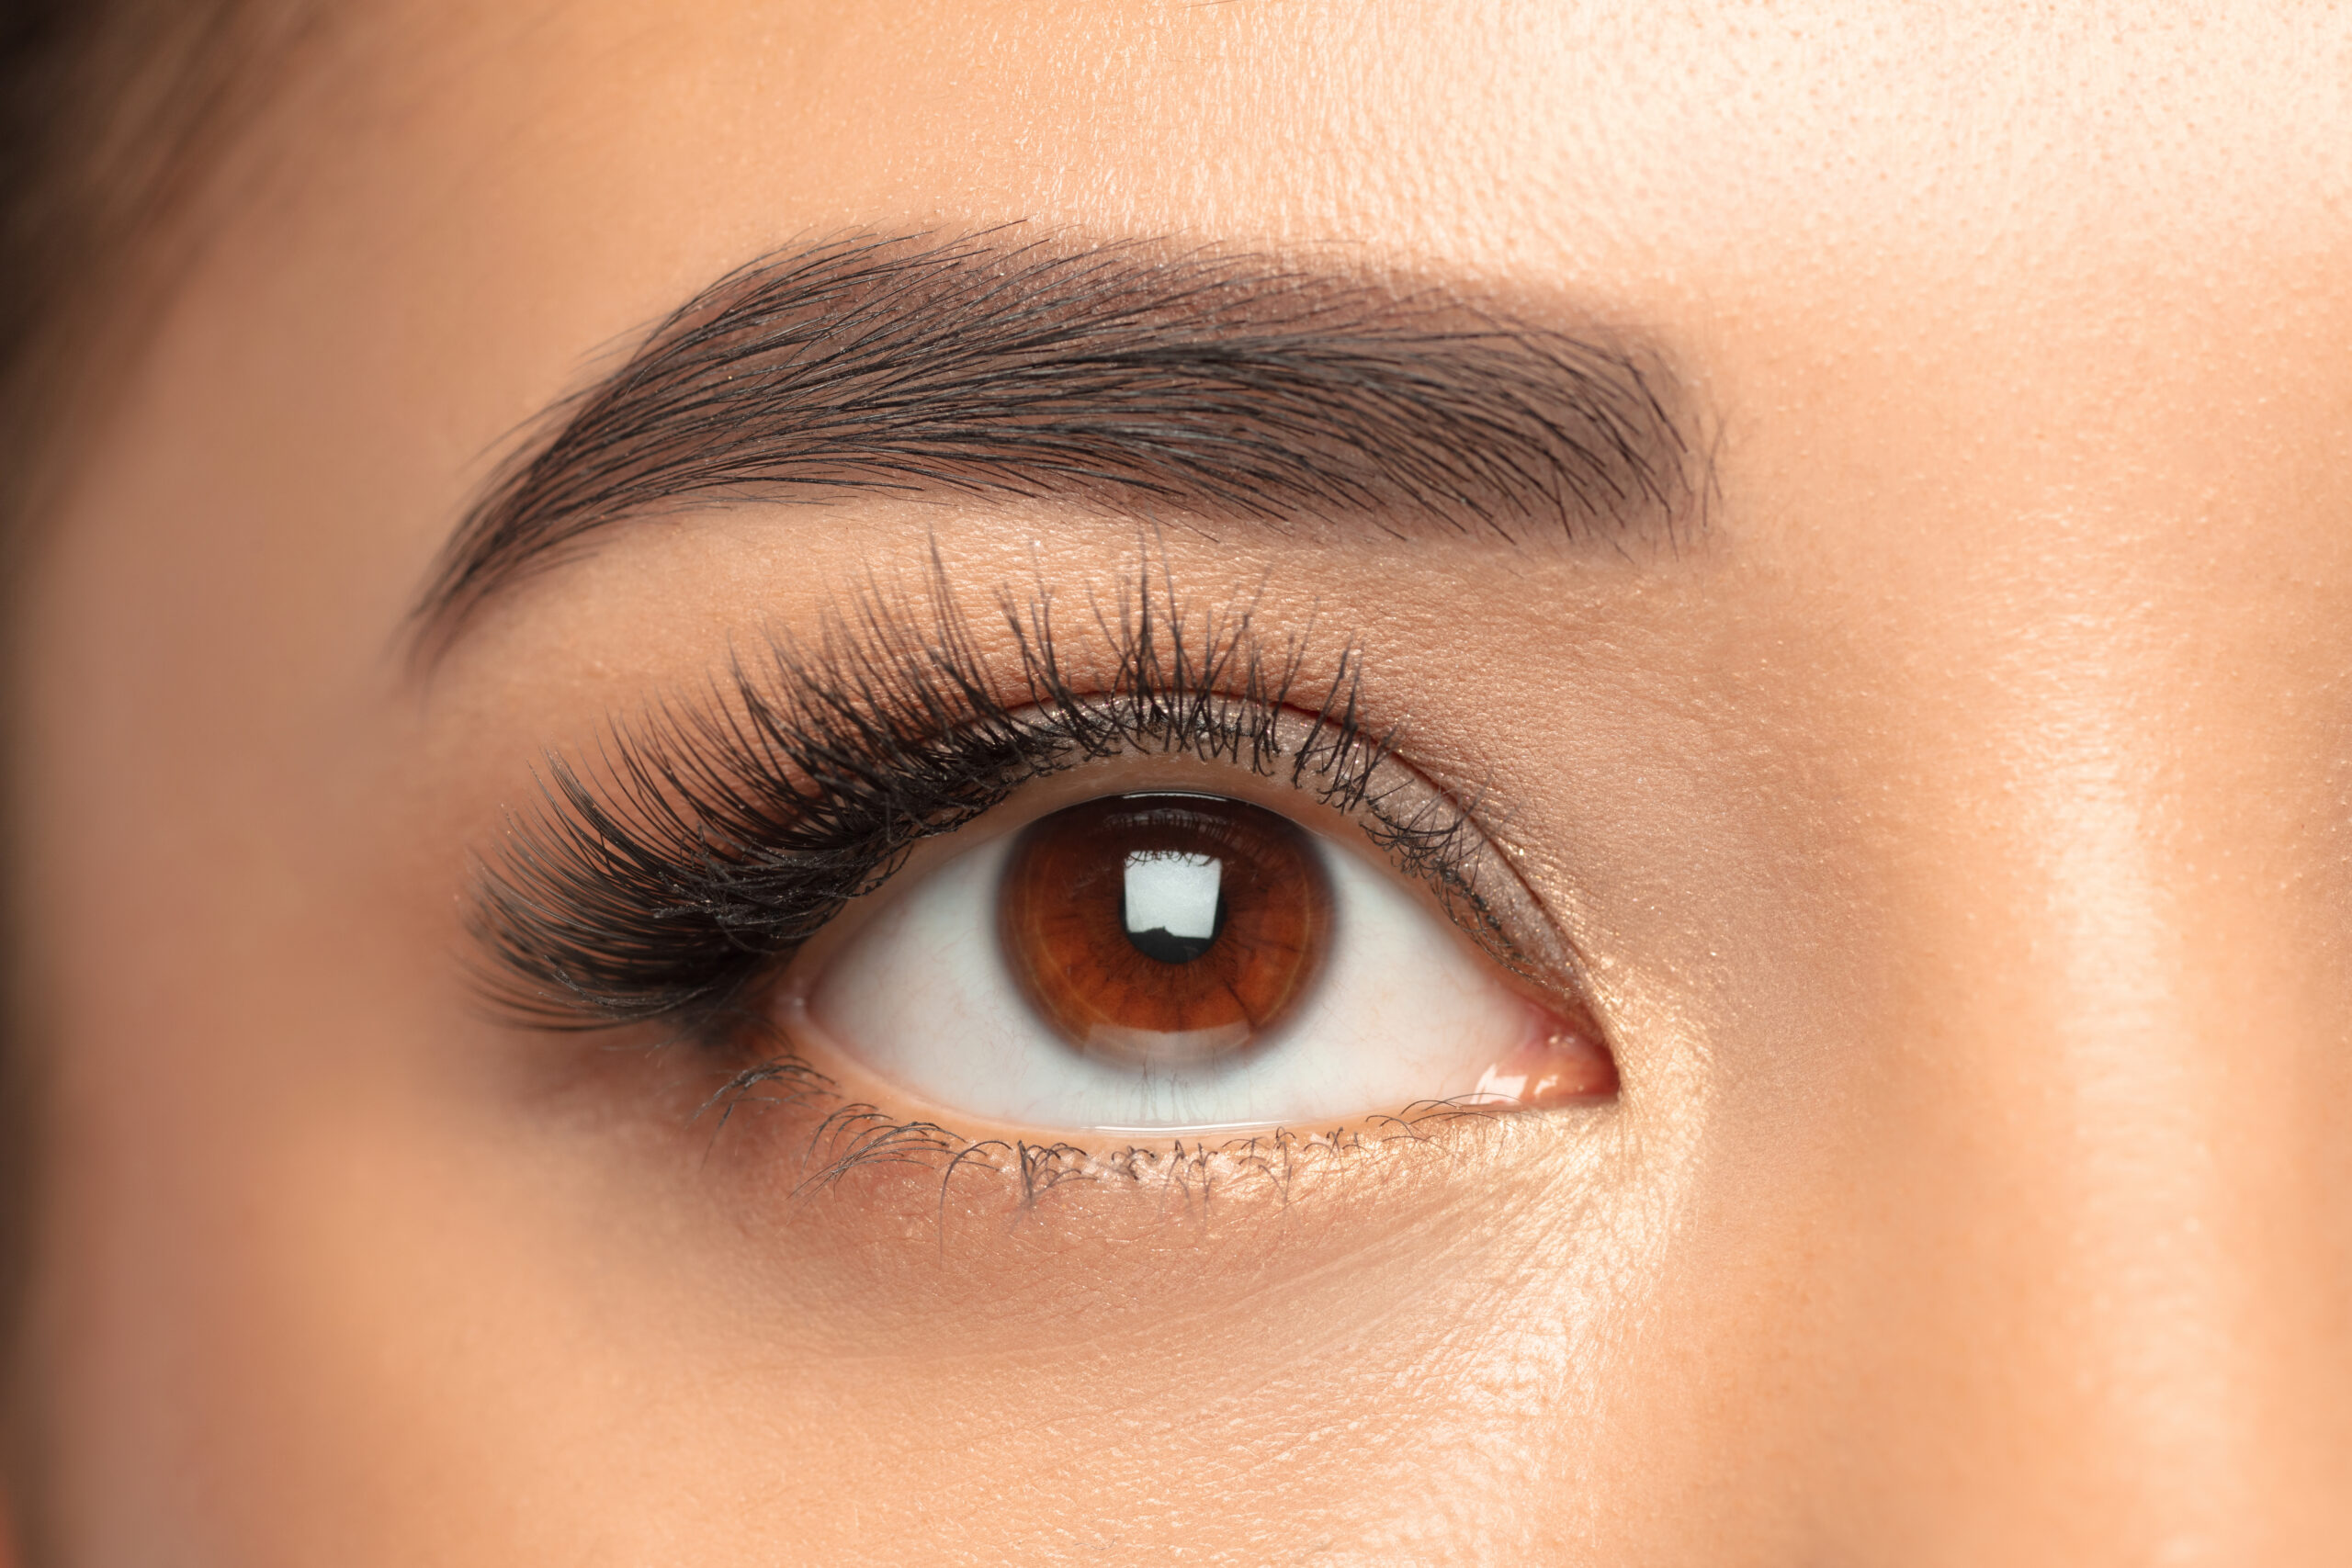 Use Careprost Eyelash Serum Correctly to Get Fuller Eyelashes